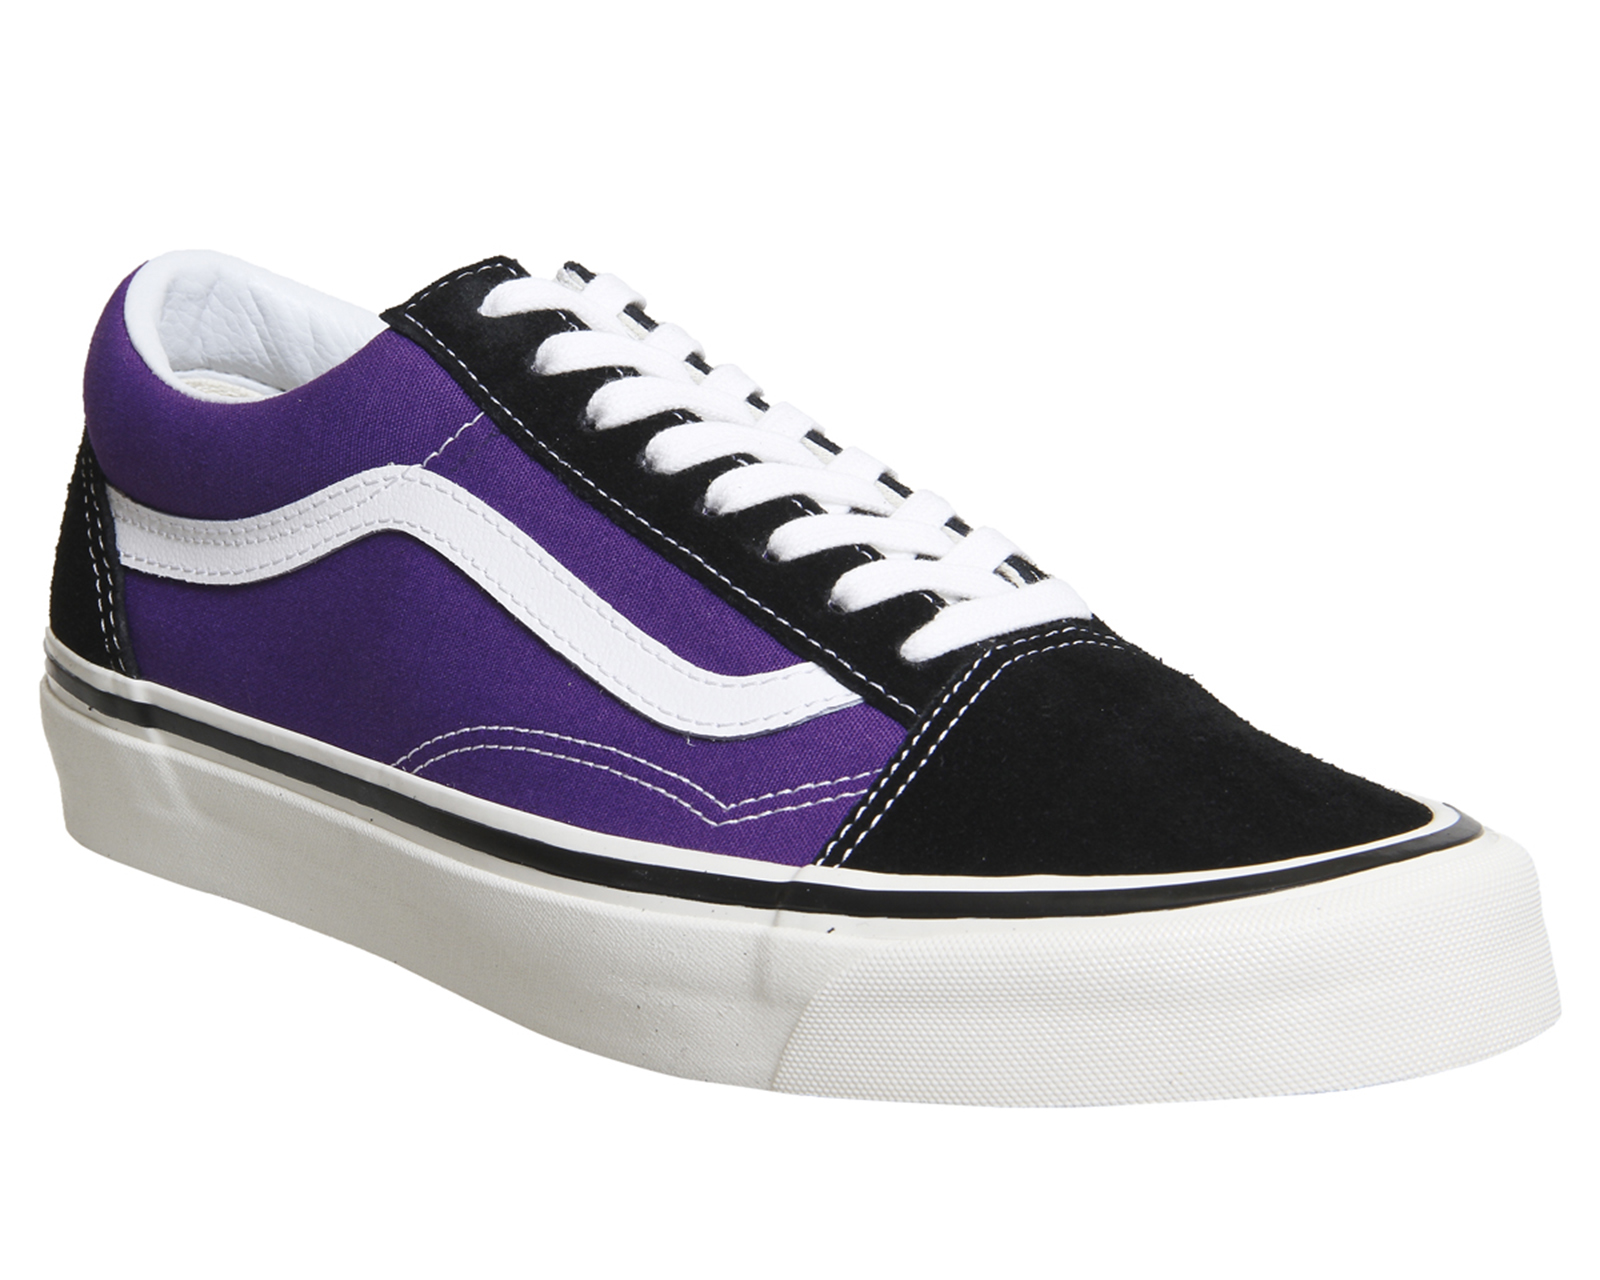 purple and black vans shoes